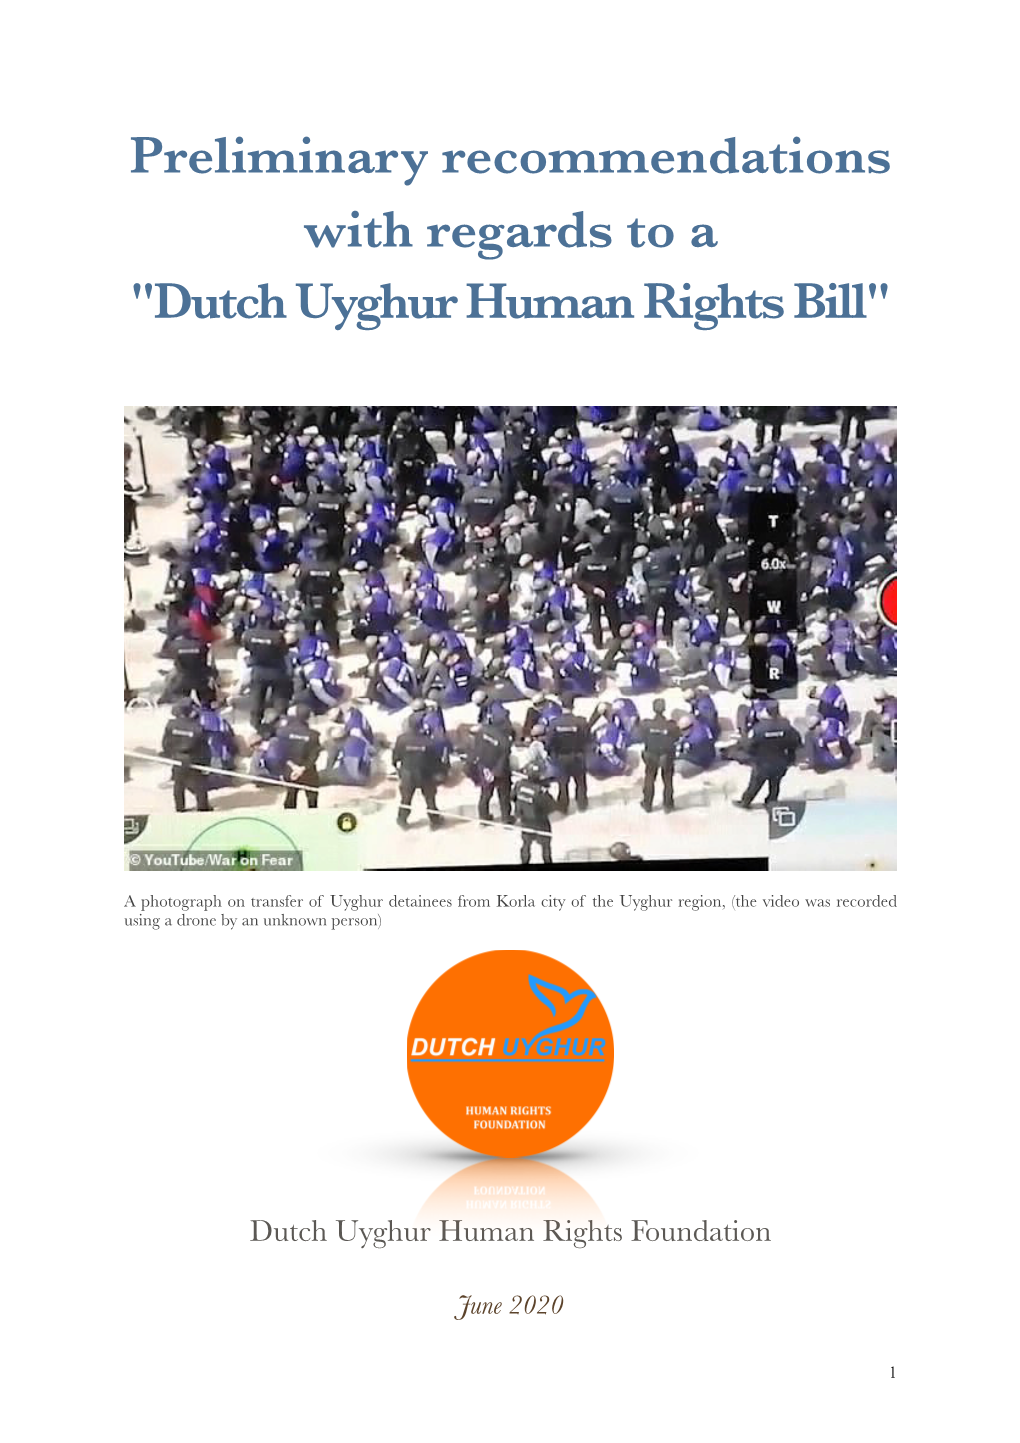 Dutch Uyghur Bill